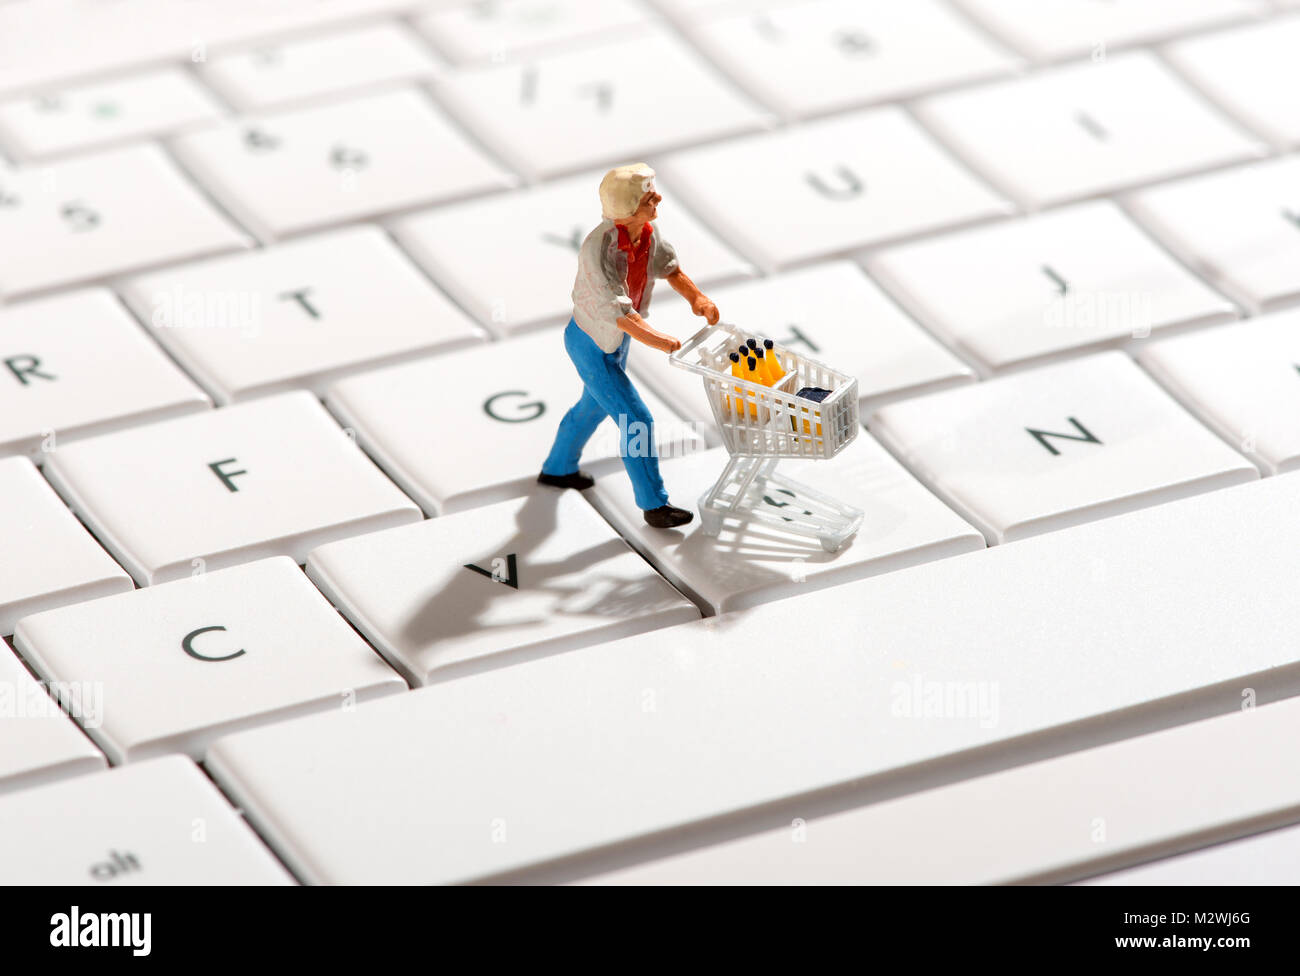 Statuetta in miniatura di una shopper spingendo un carrello sulla tastiera di un computer in un concetto di online o acquisti via internet Foto Stock